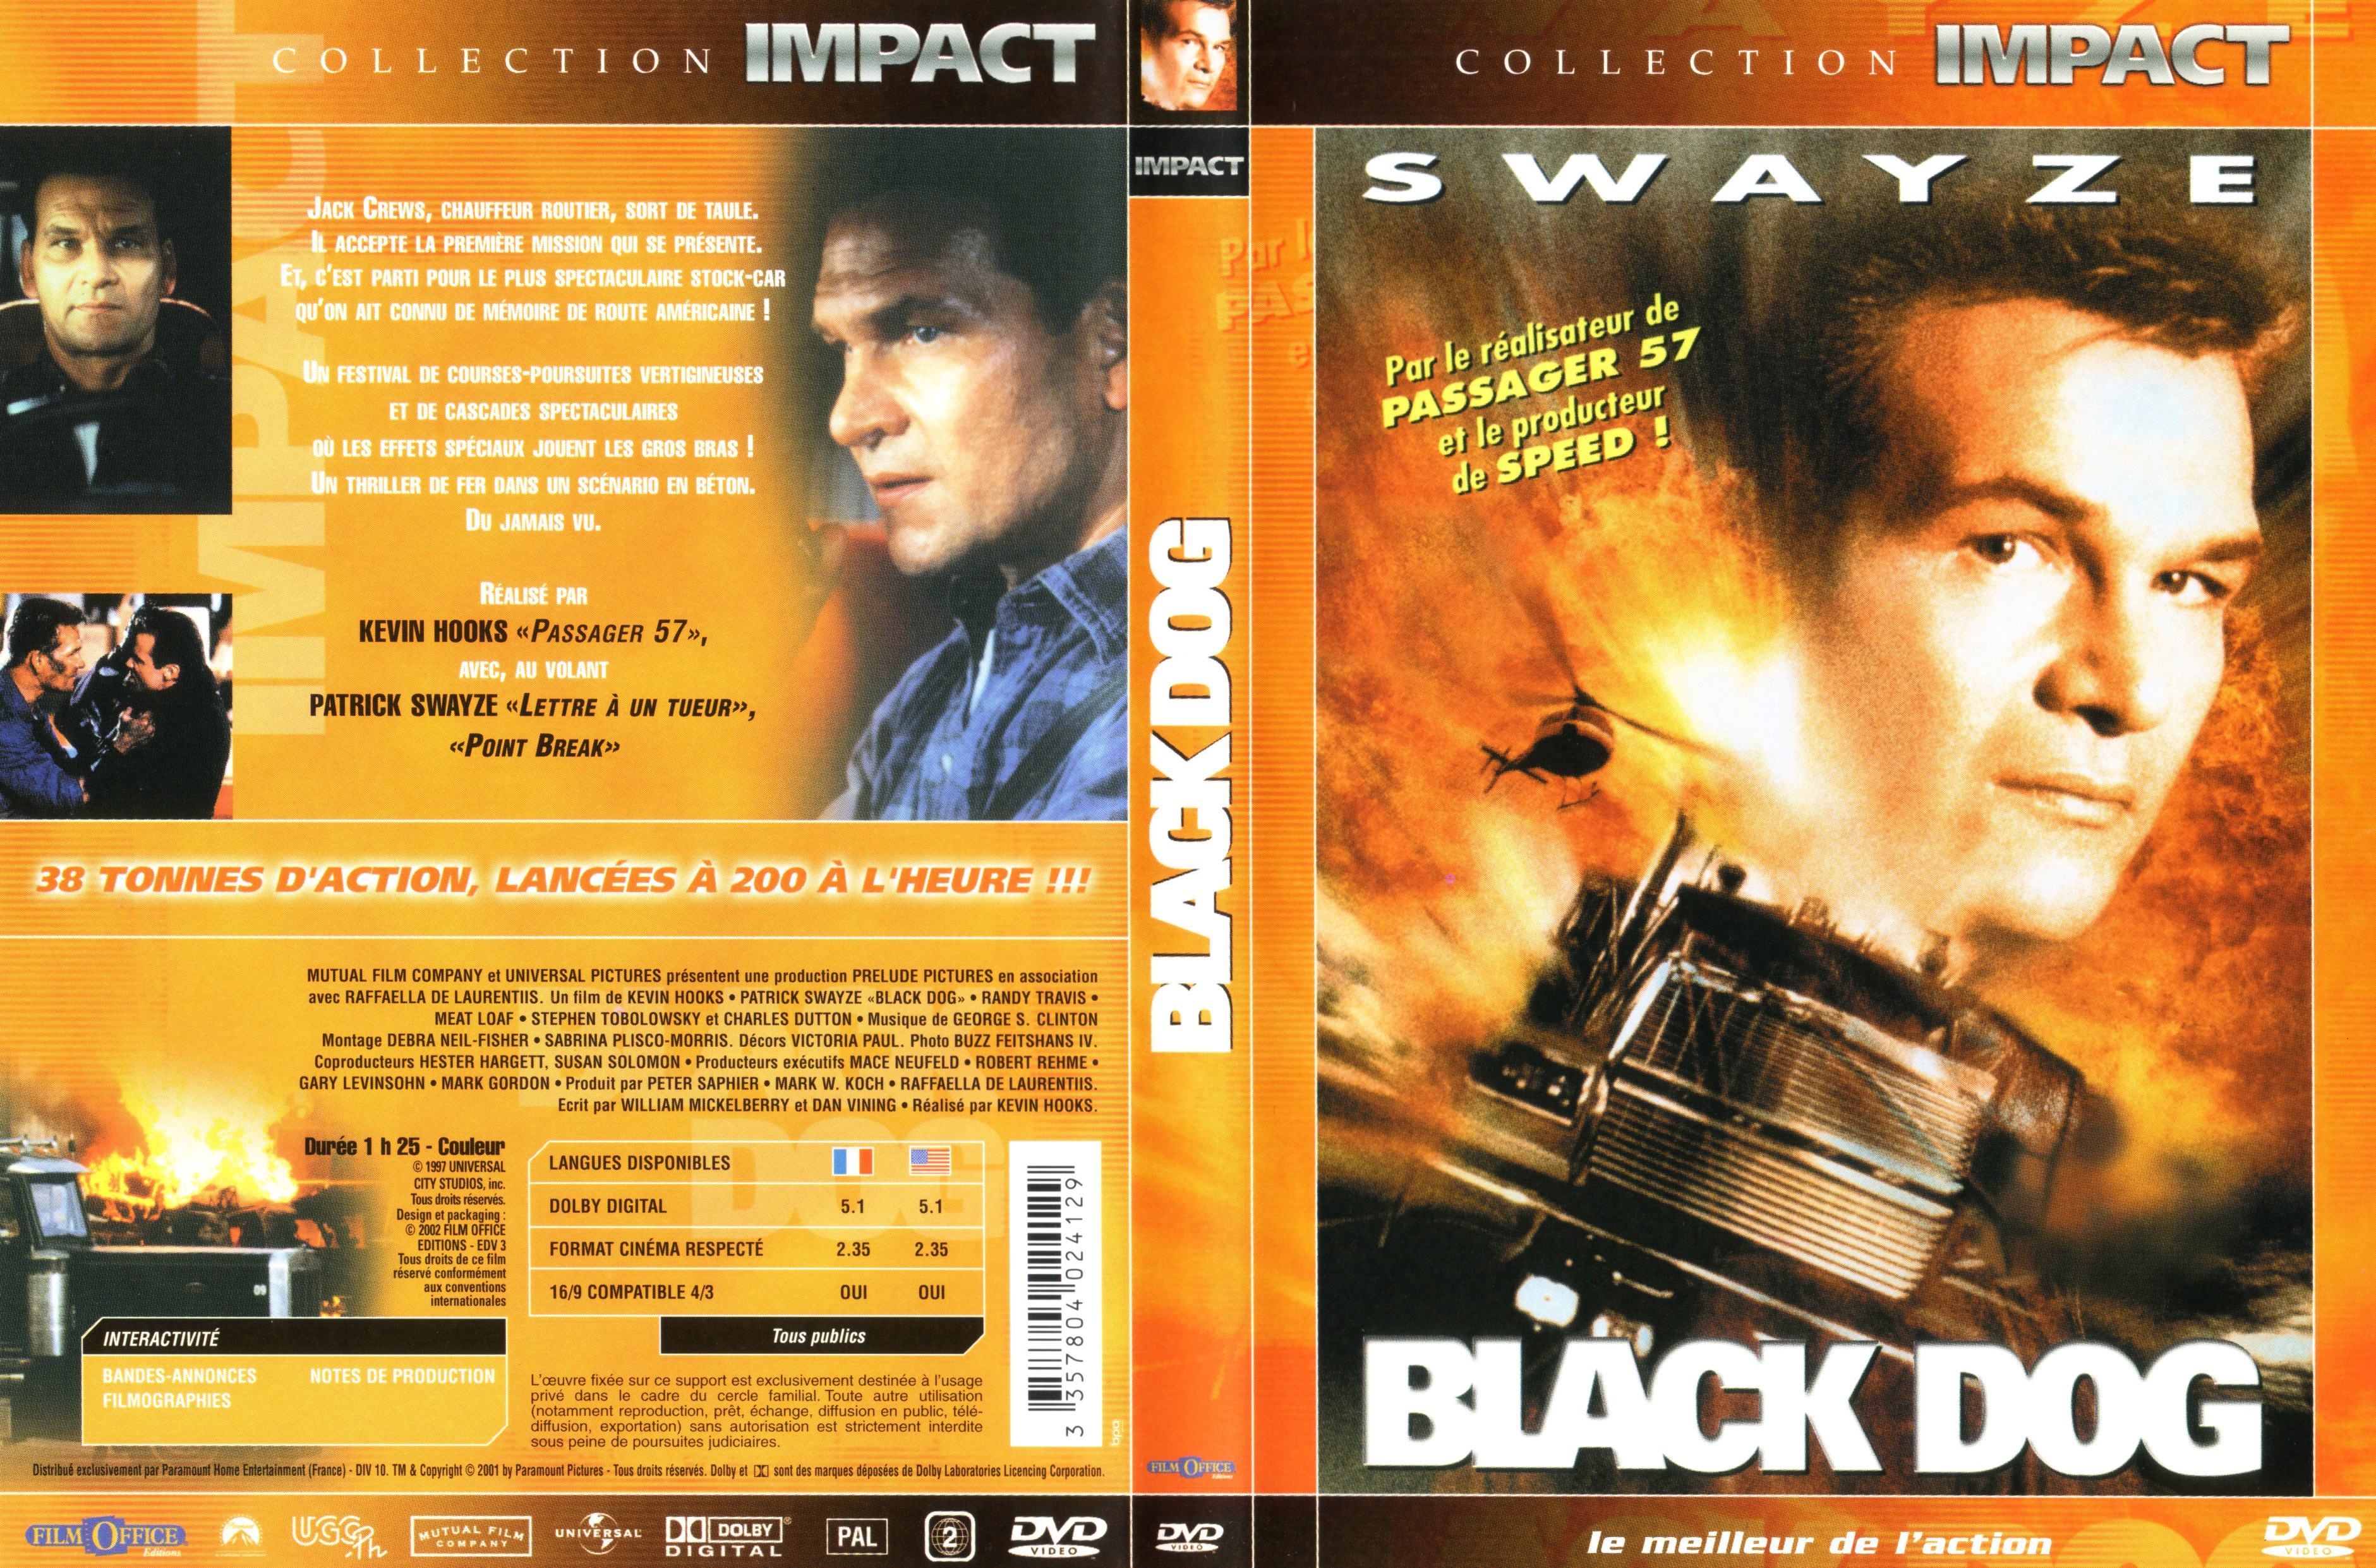 Jaquette DVD Black dog v2